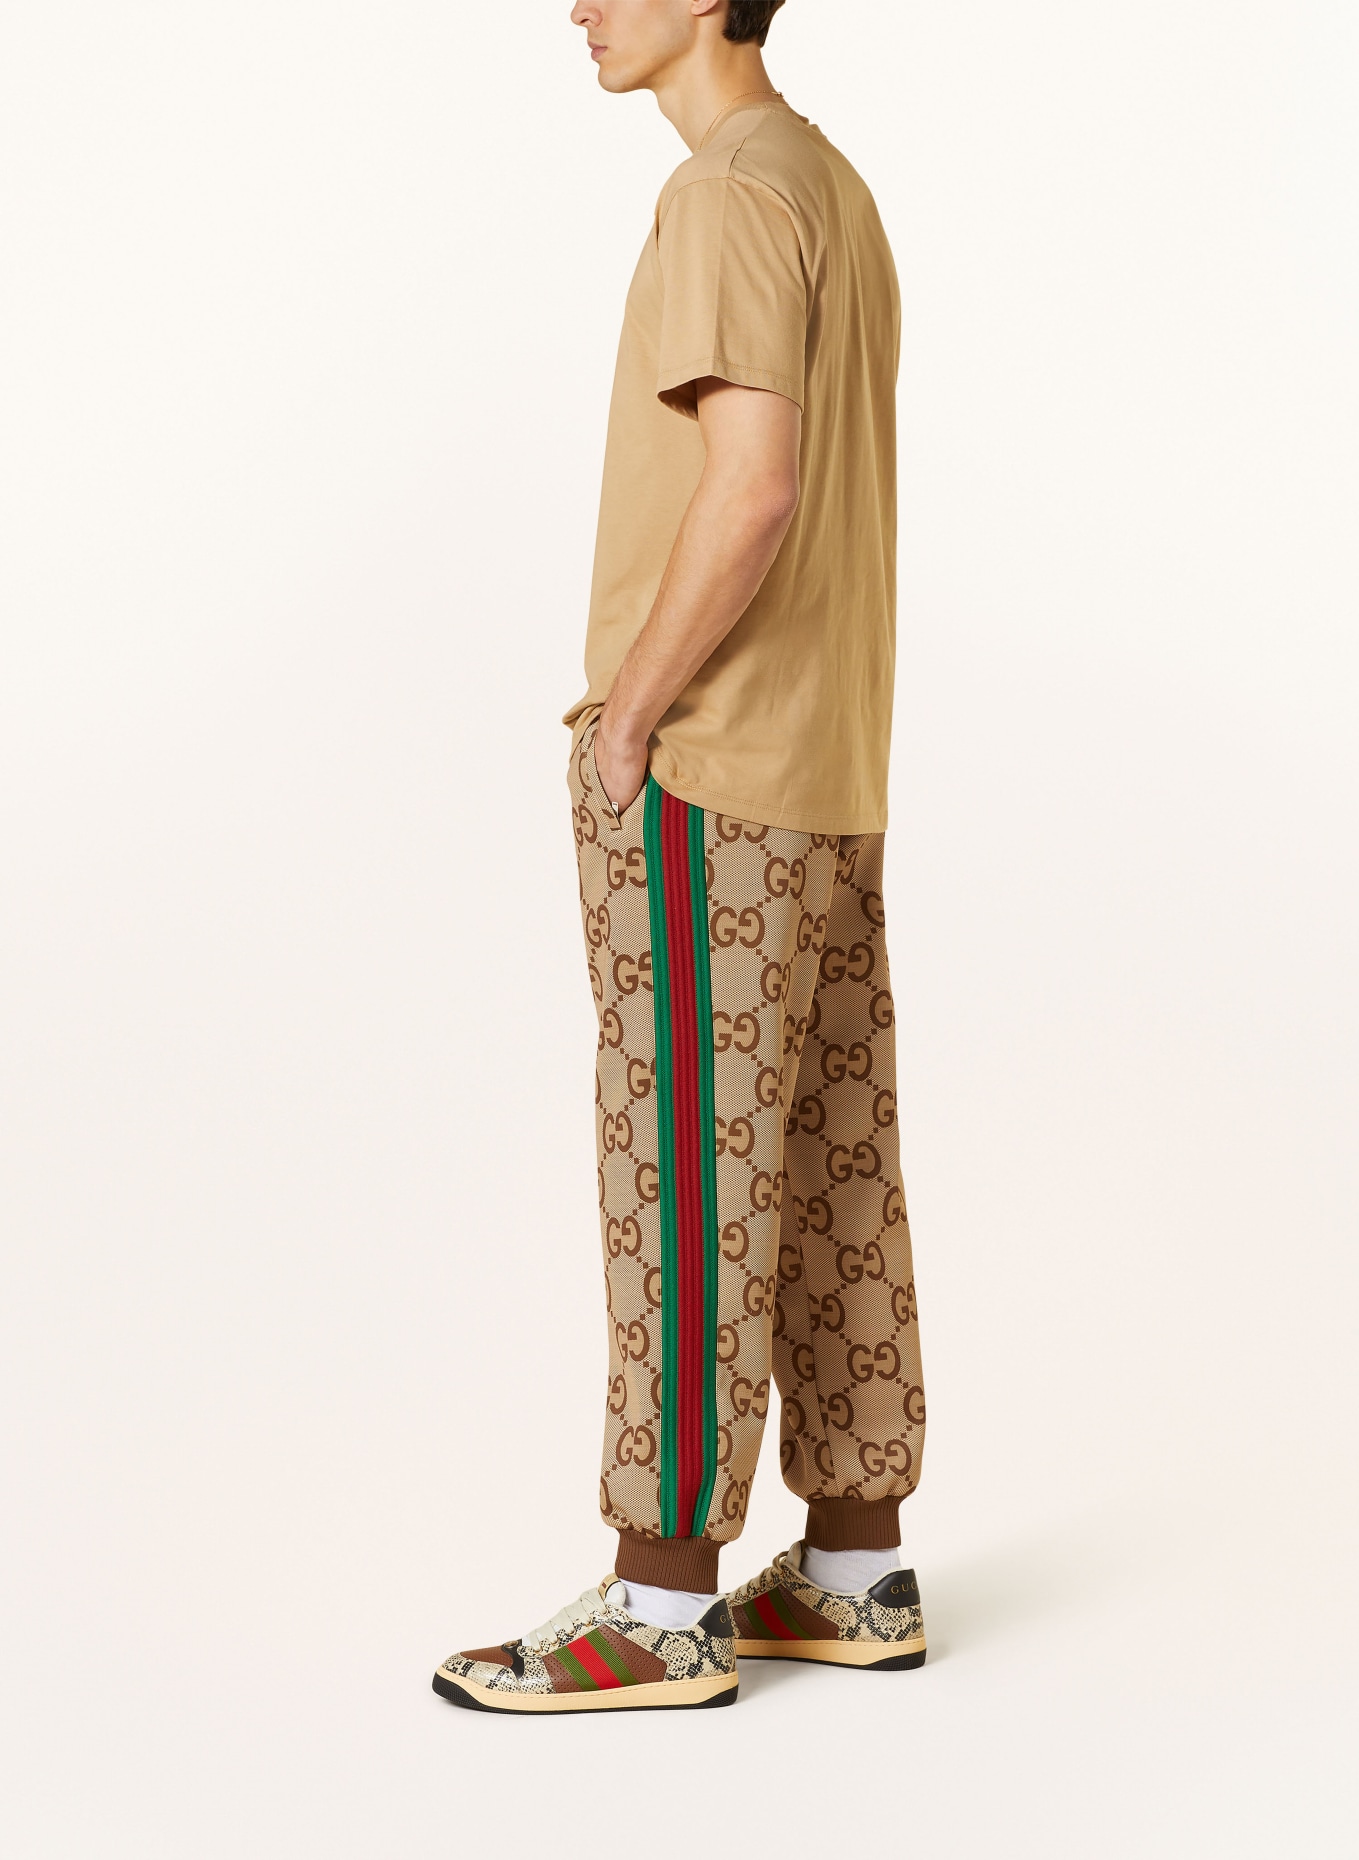 15 Gucci GG Supreme leggings ideas